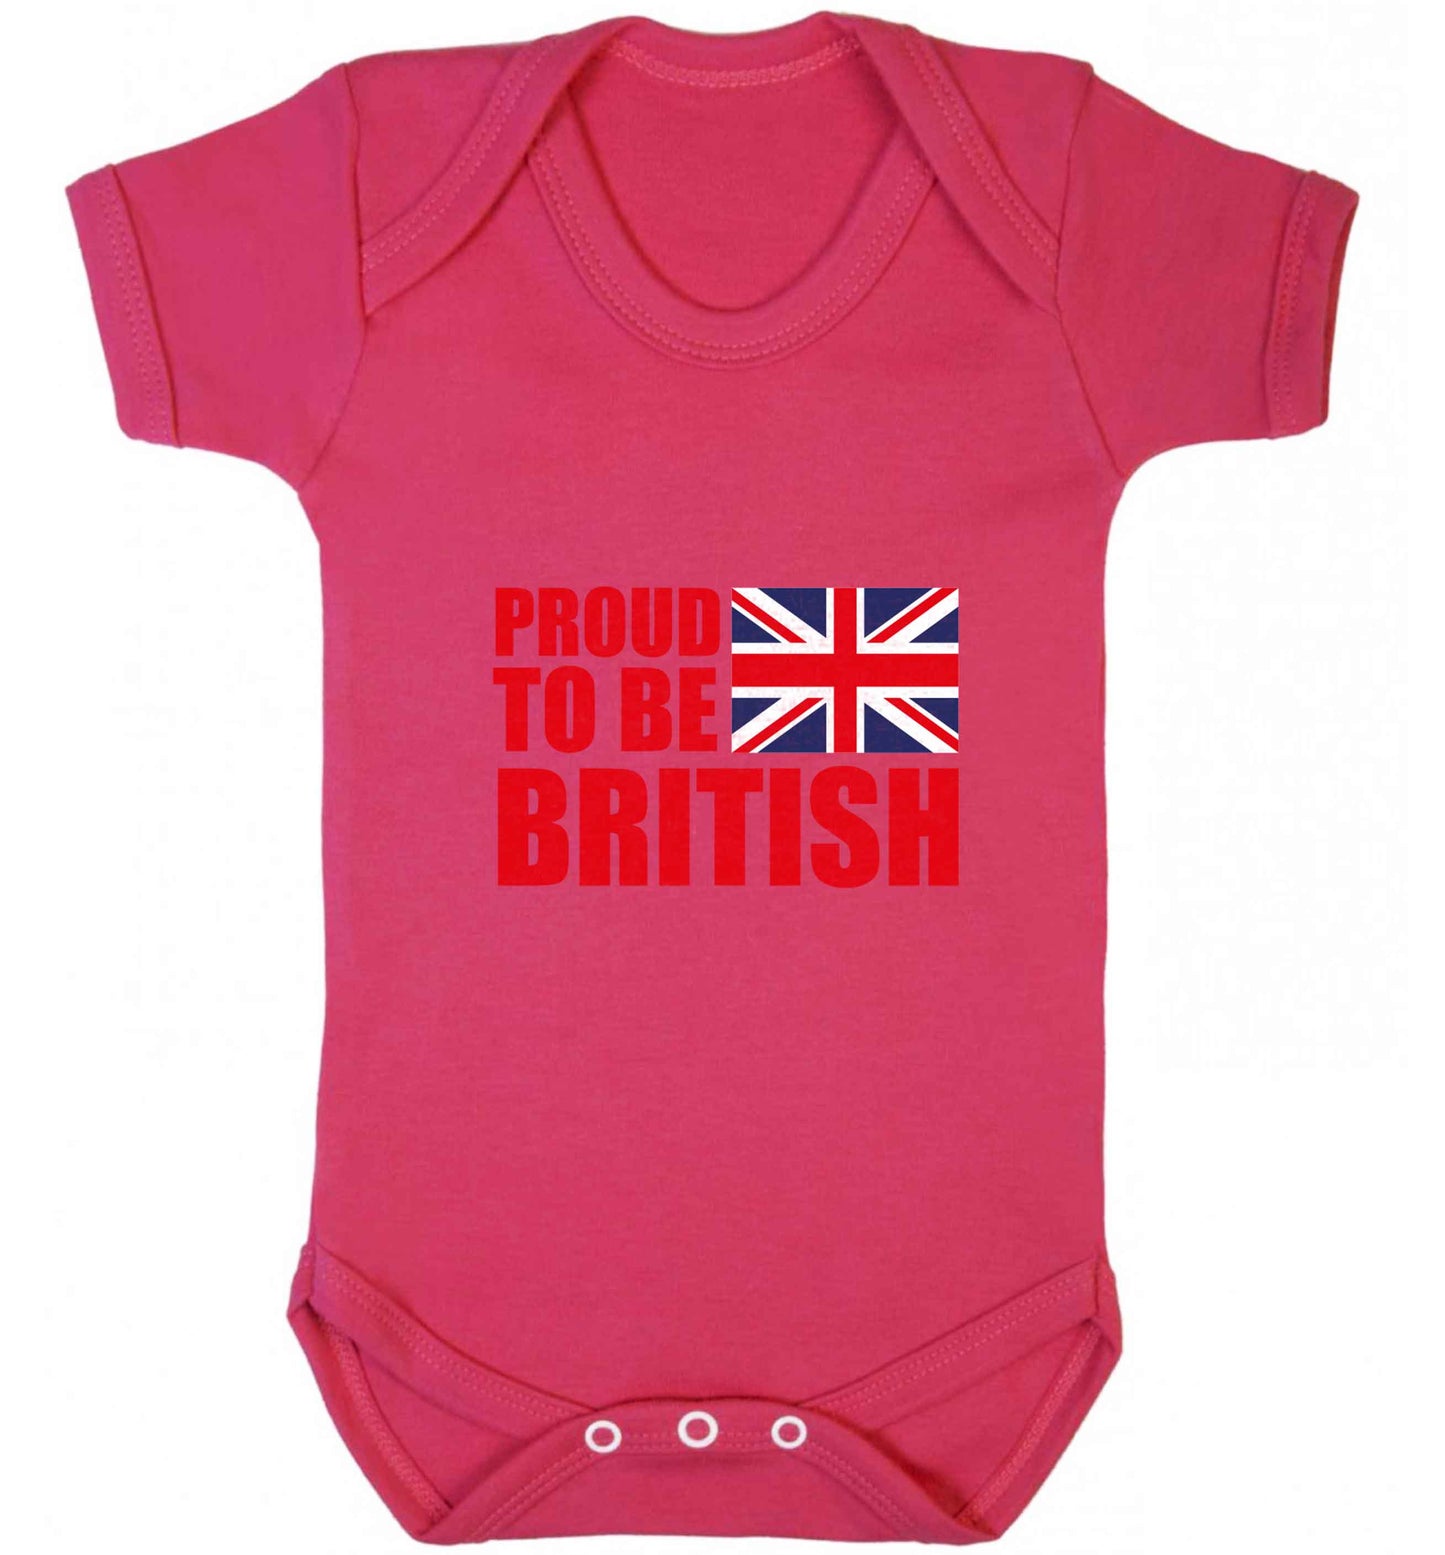 Proud to be British baby vest dark pink 18-24 months